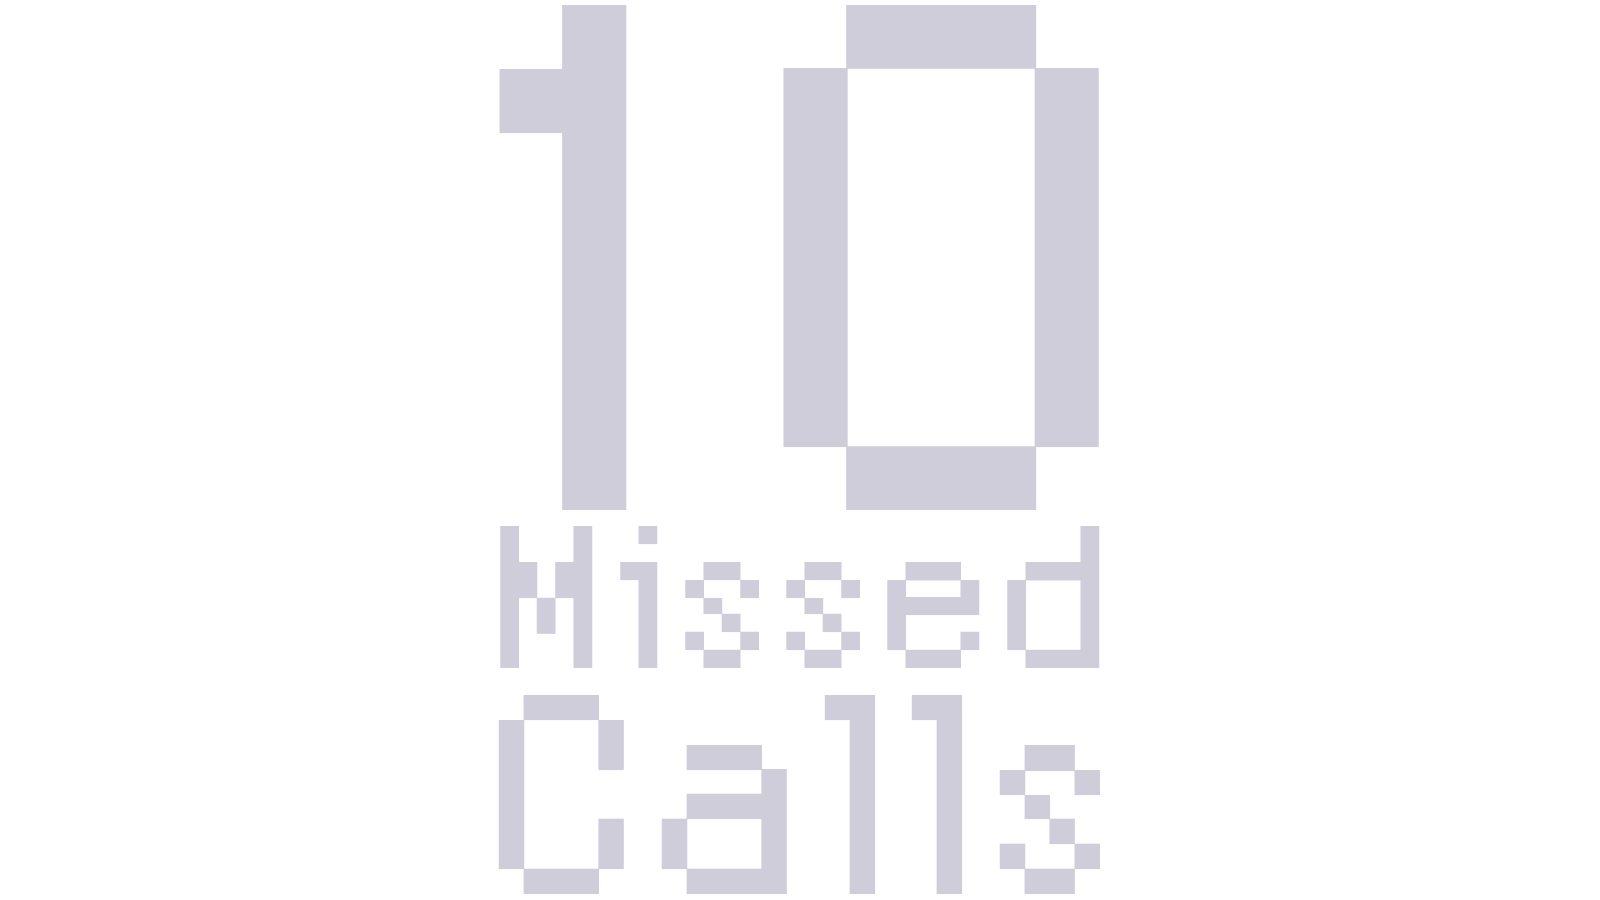 10 Missed Calls